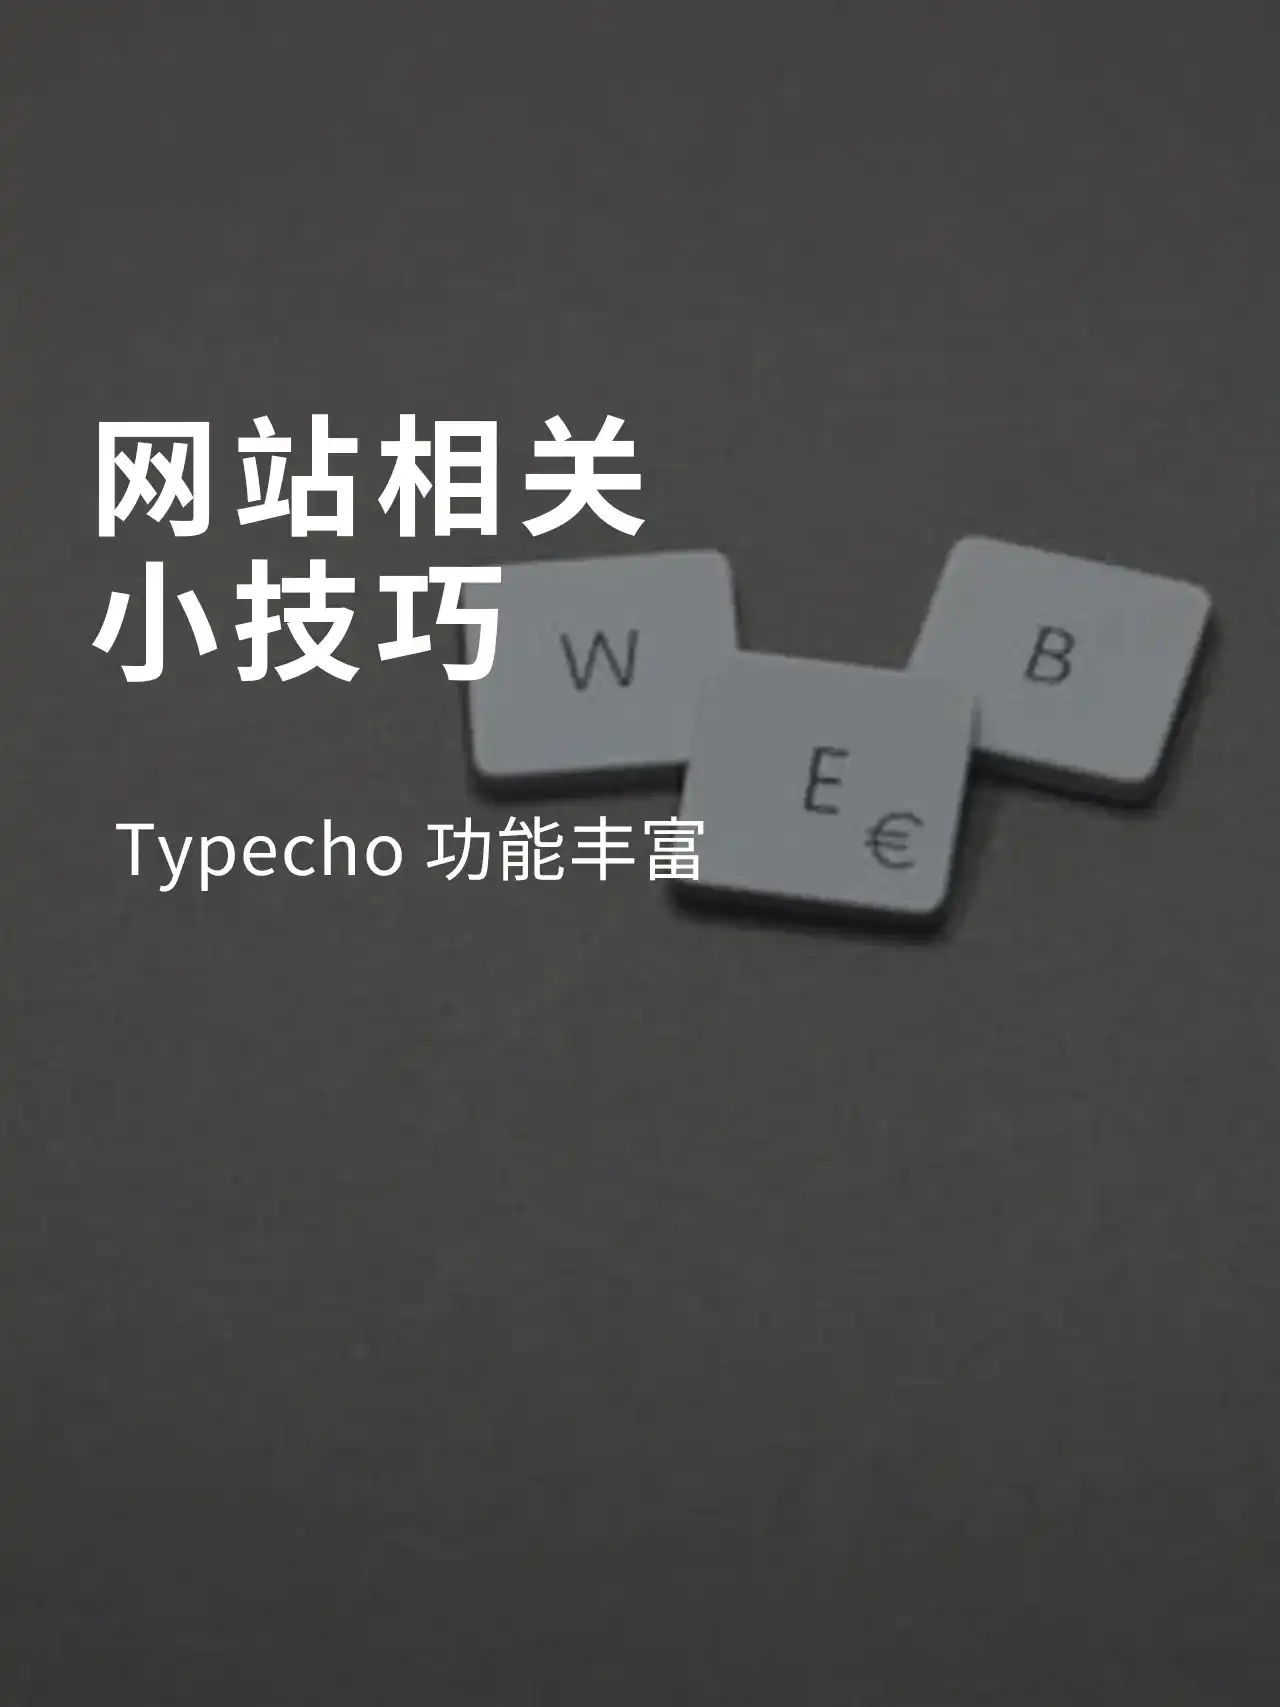 网页小知识·Typecho功能丰富